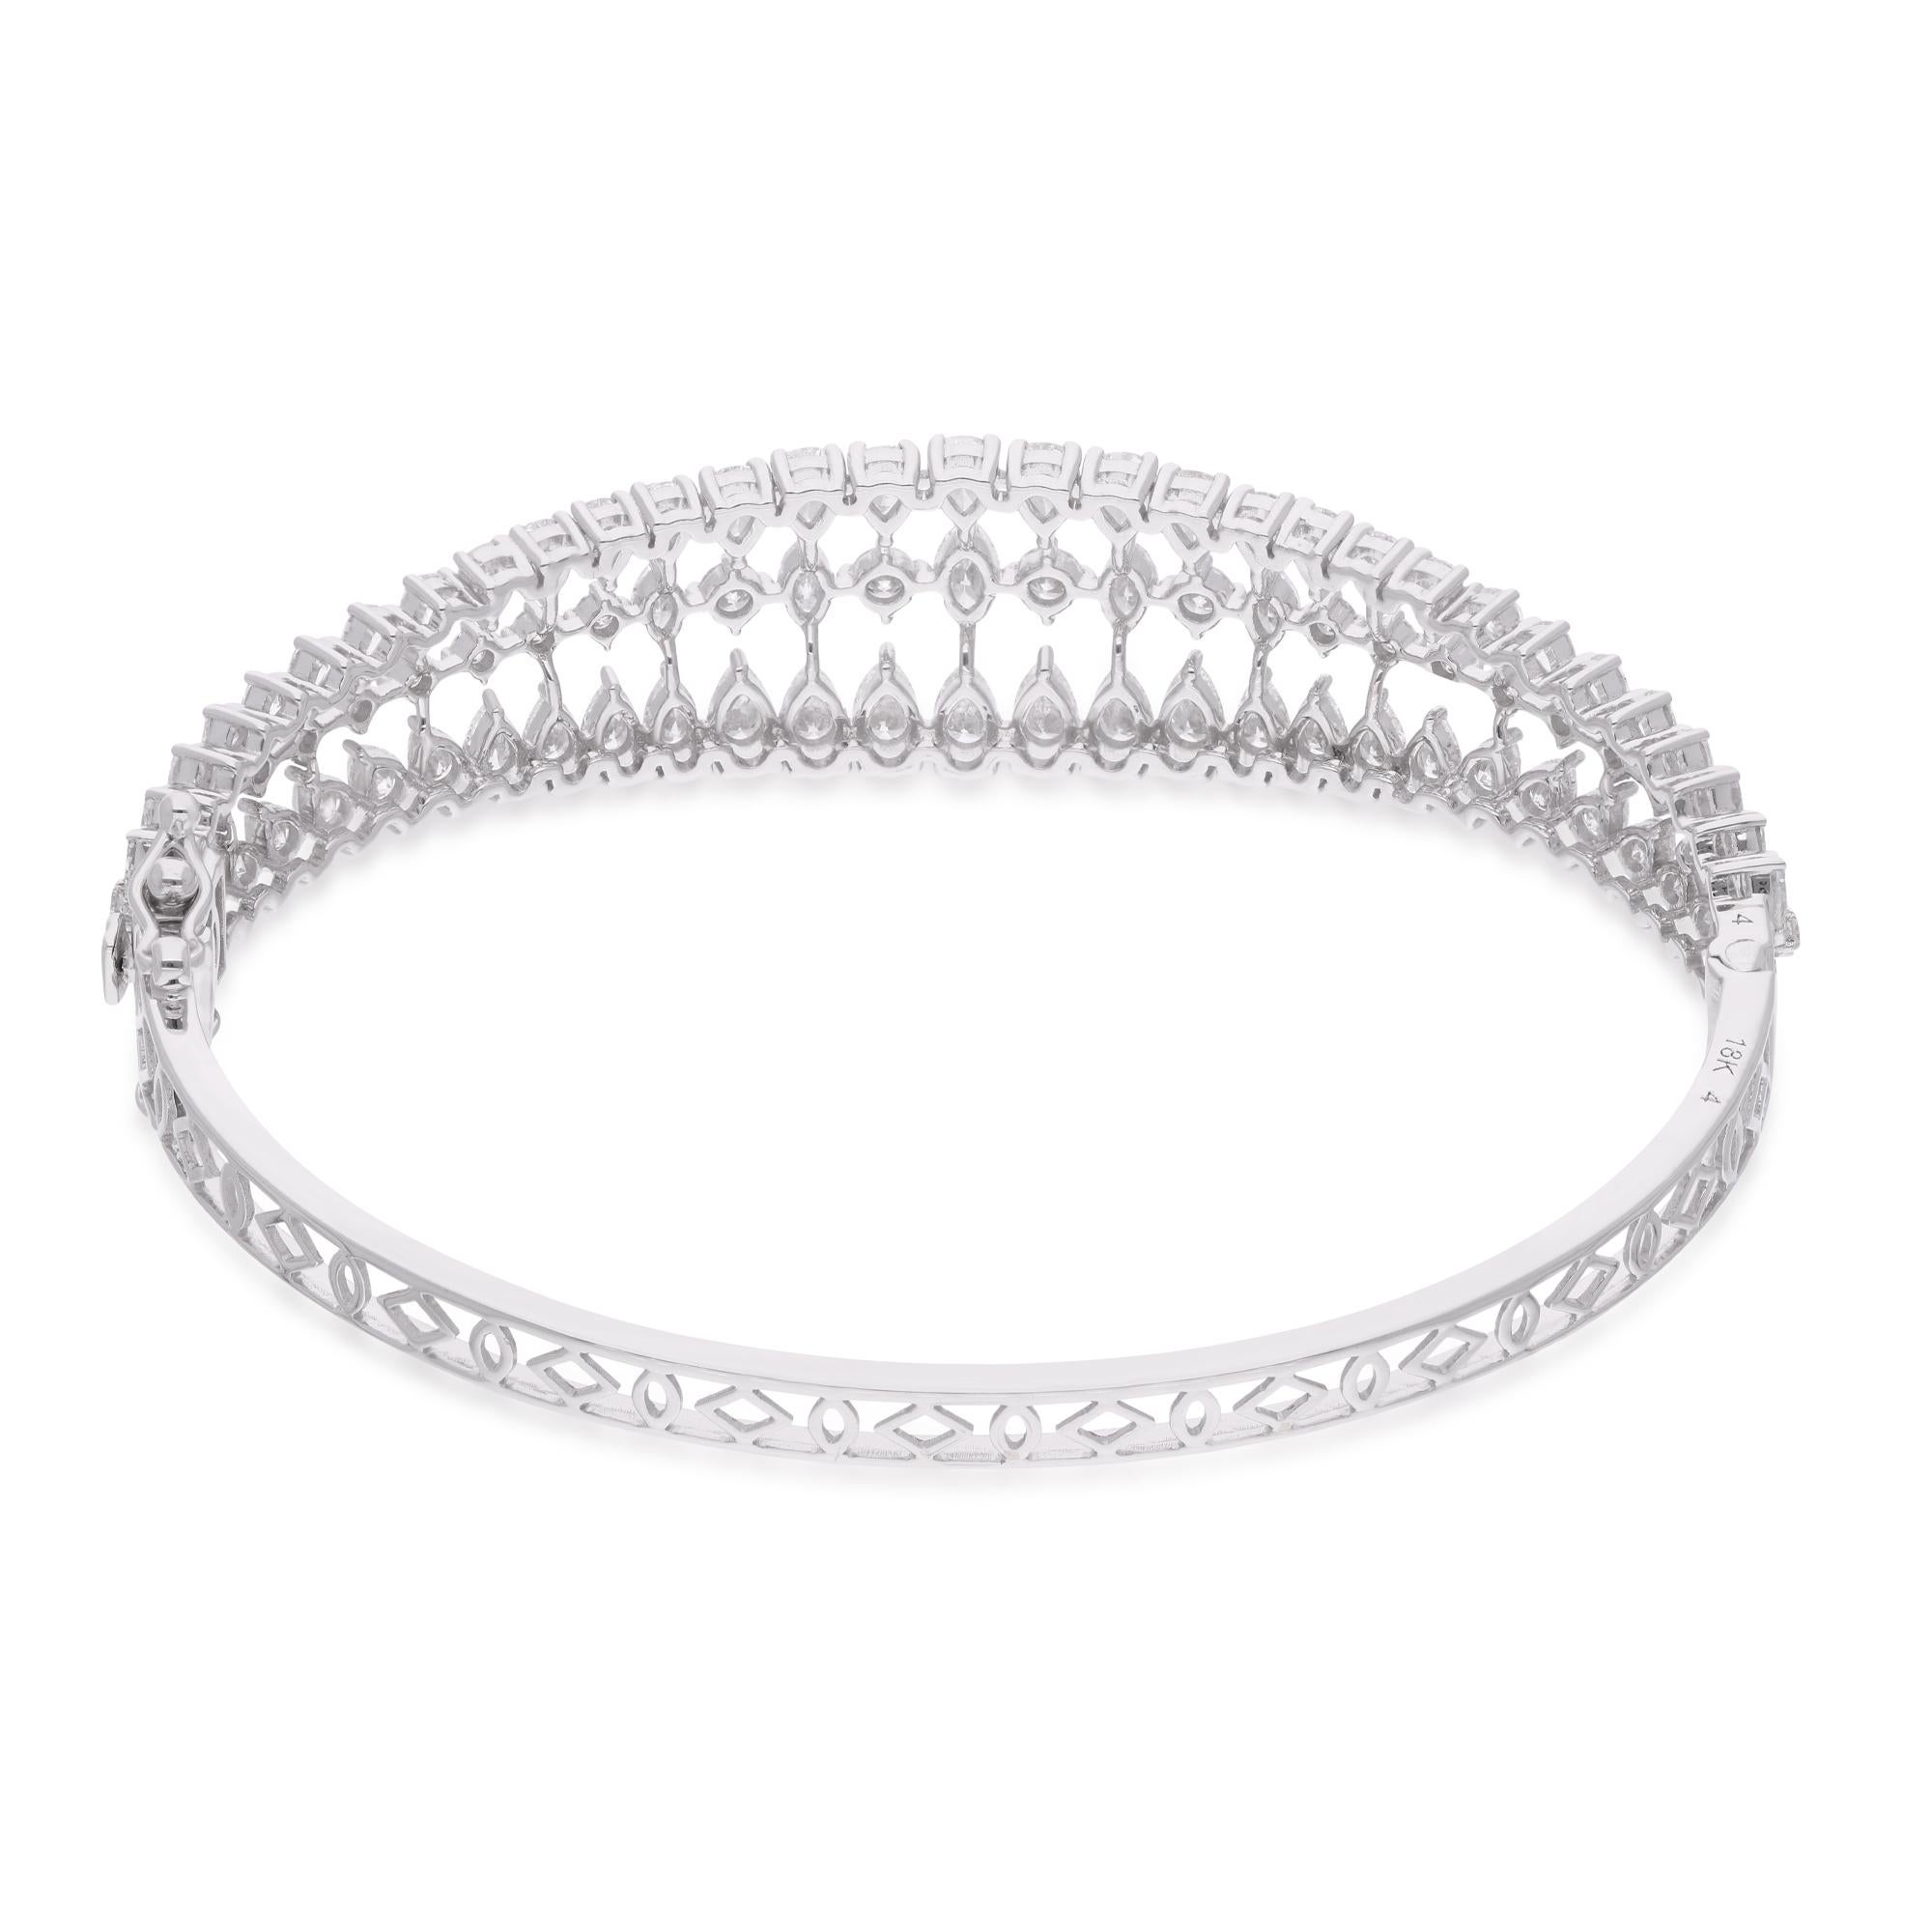 Laissez-vous séduire par l'élégance pure et l'allure intemporelle de cet exquis bracelet cage à diamants de 5,33 carats, réalisé avec une attention méticuleuse aux détails en or blanc 14 carats. Cette remarquable pièce de joaillerie fine marie